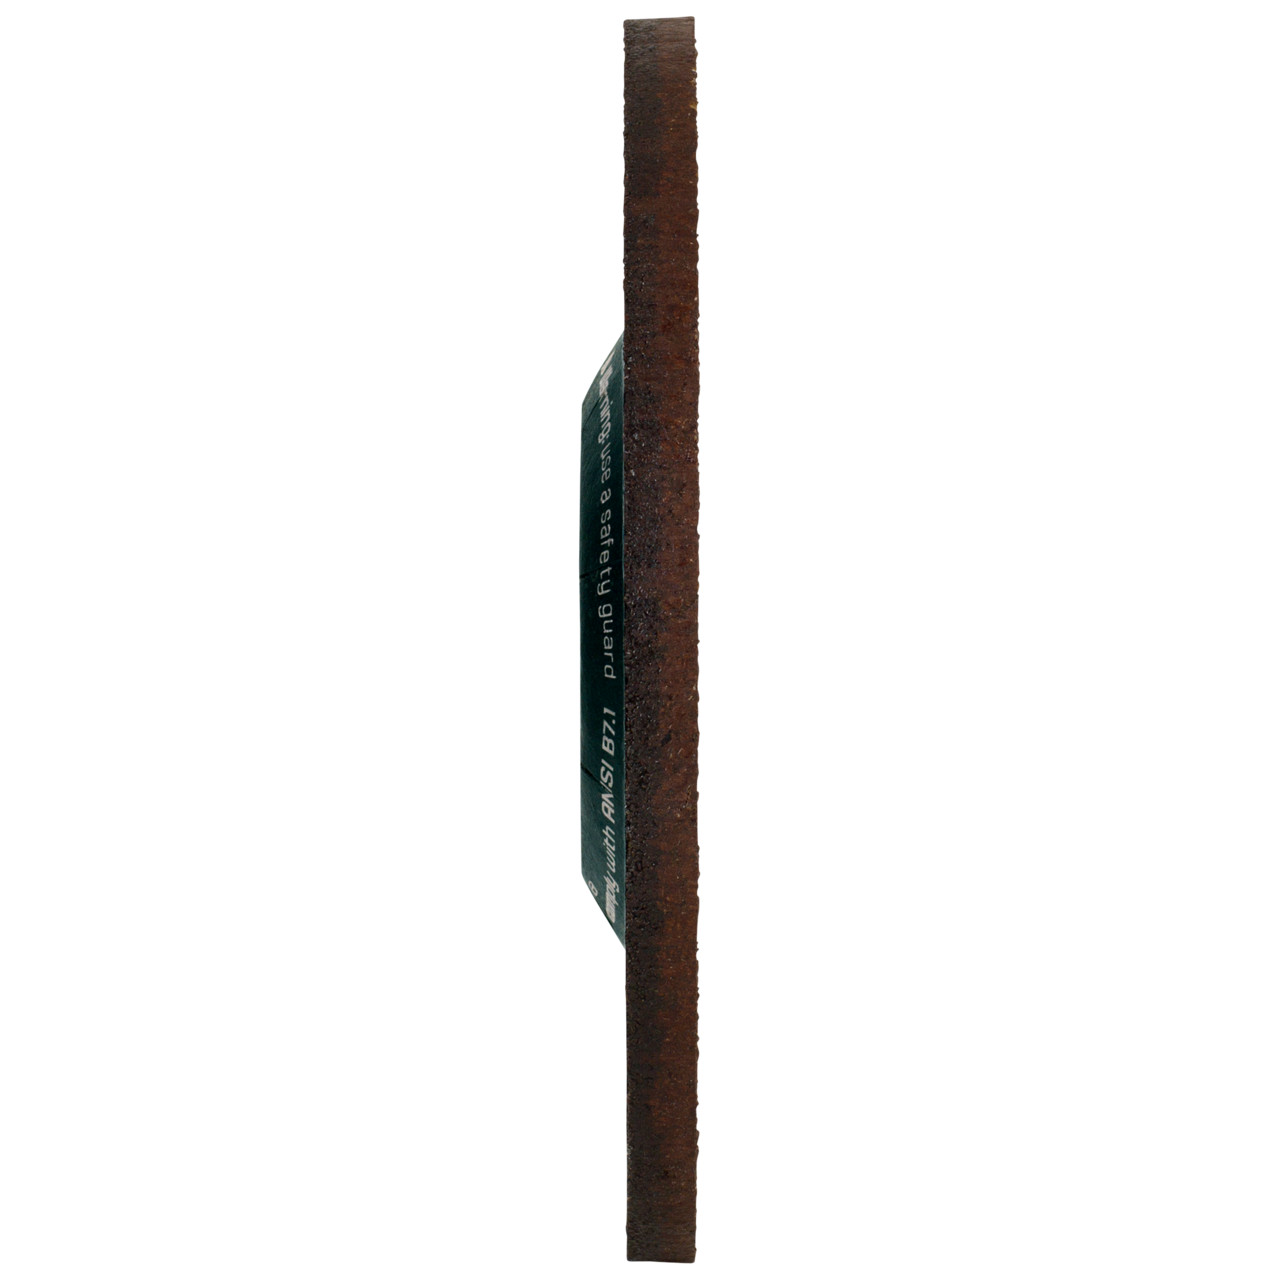 Tyrolit Karhennuslevy DxUxH 150x4x22.23 CERABOND X teräkselle ja ruostumattomalle teräkselle